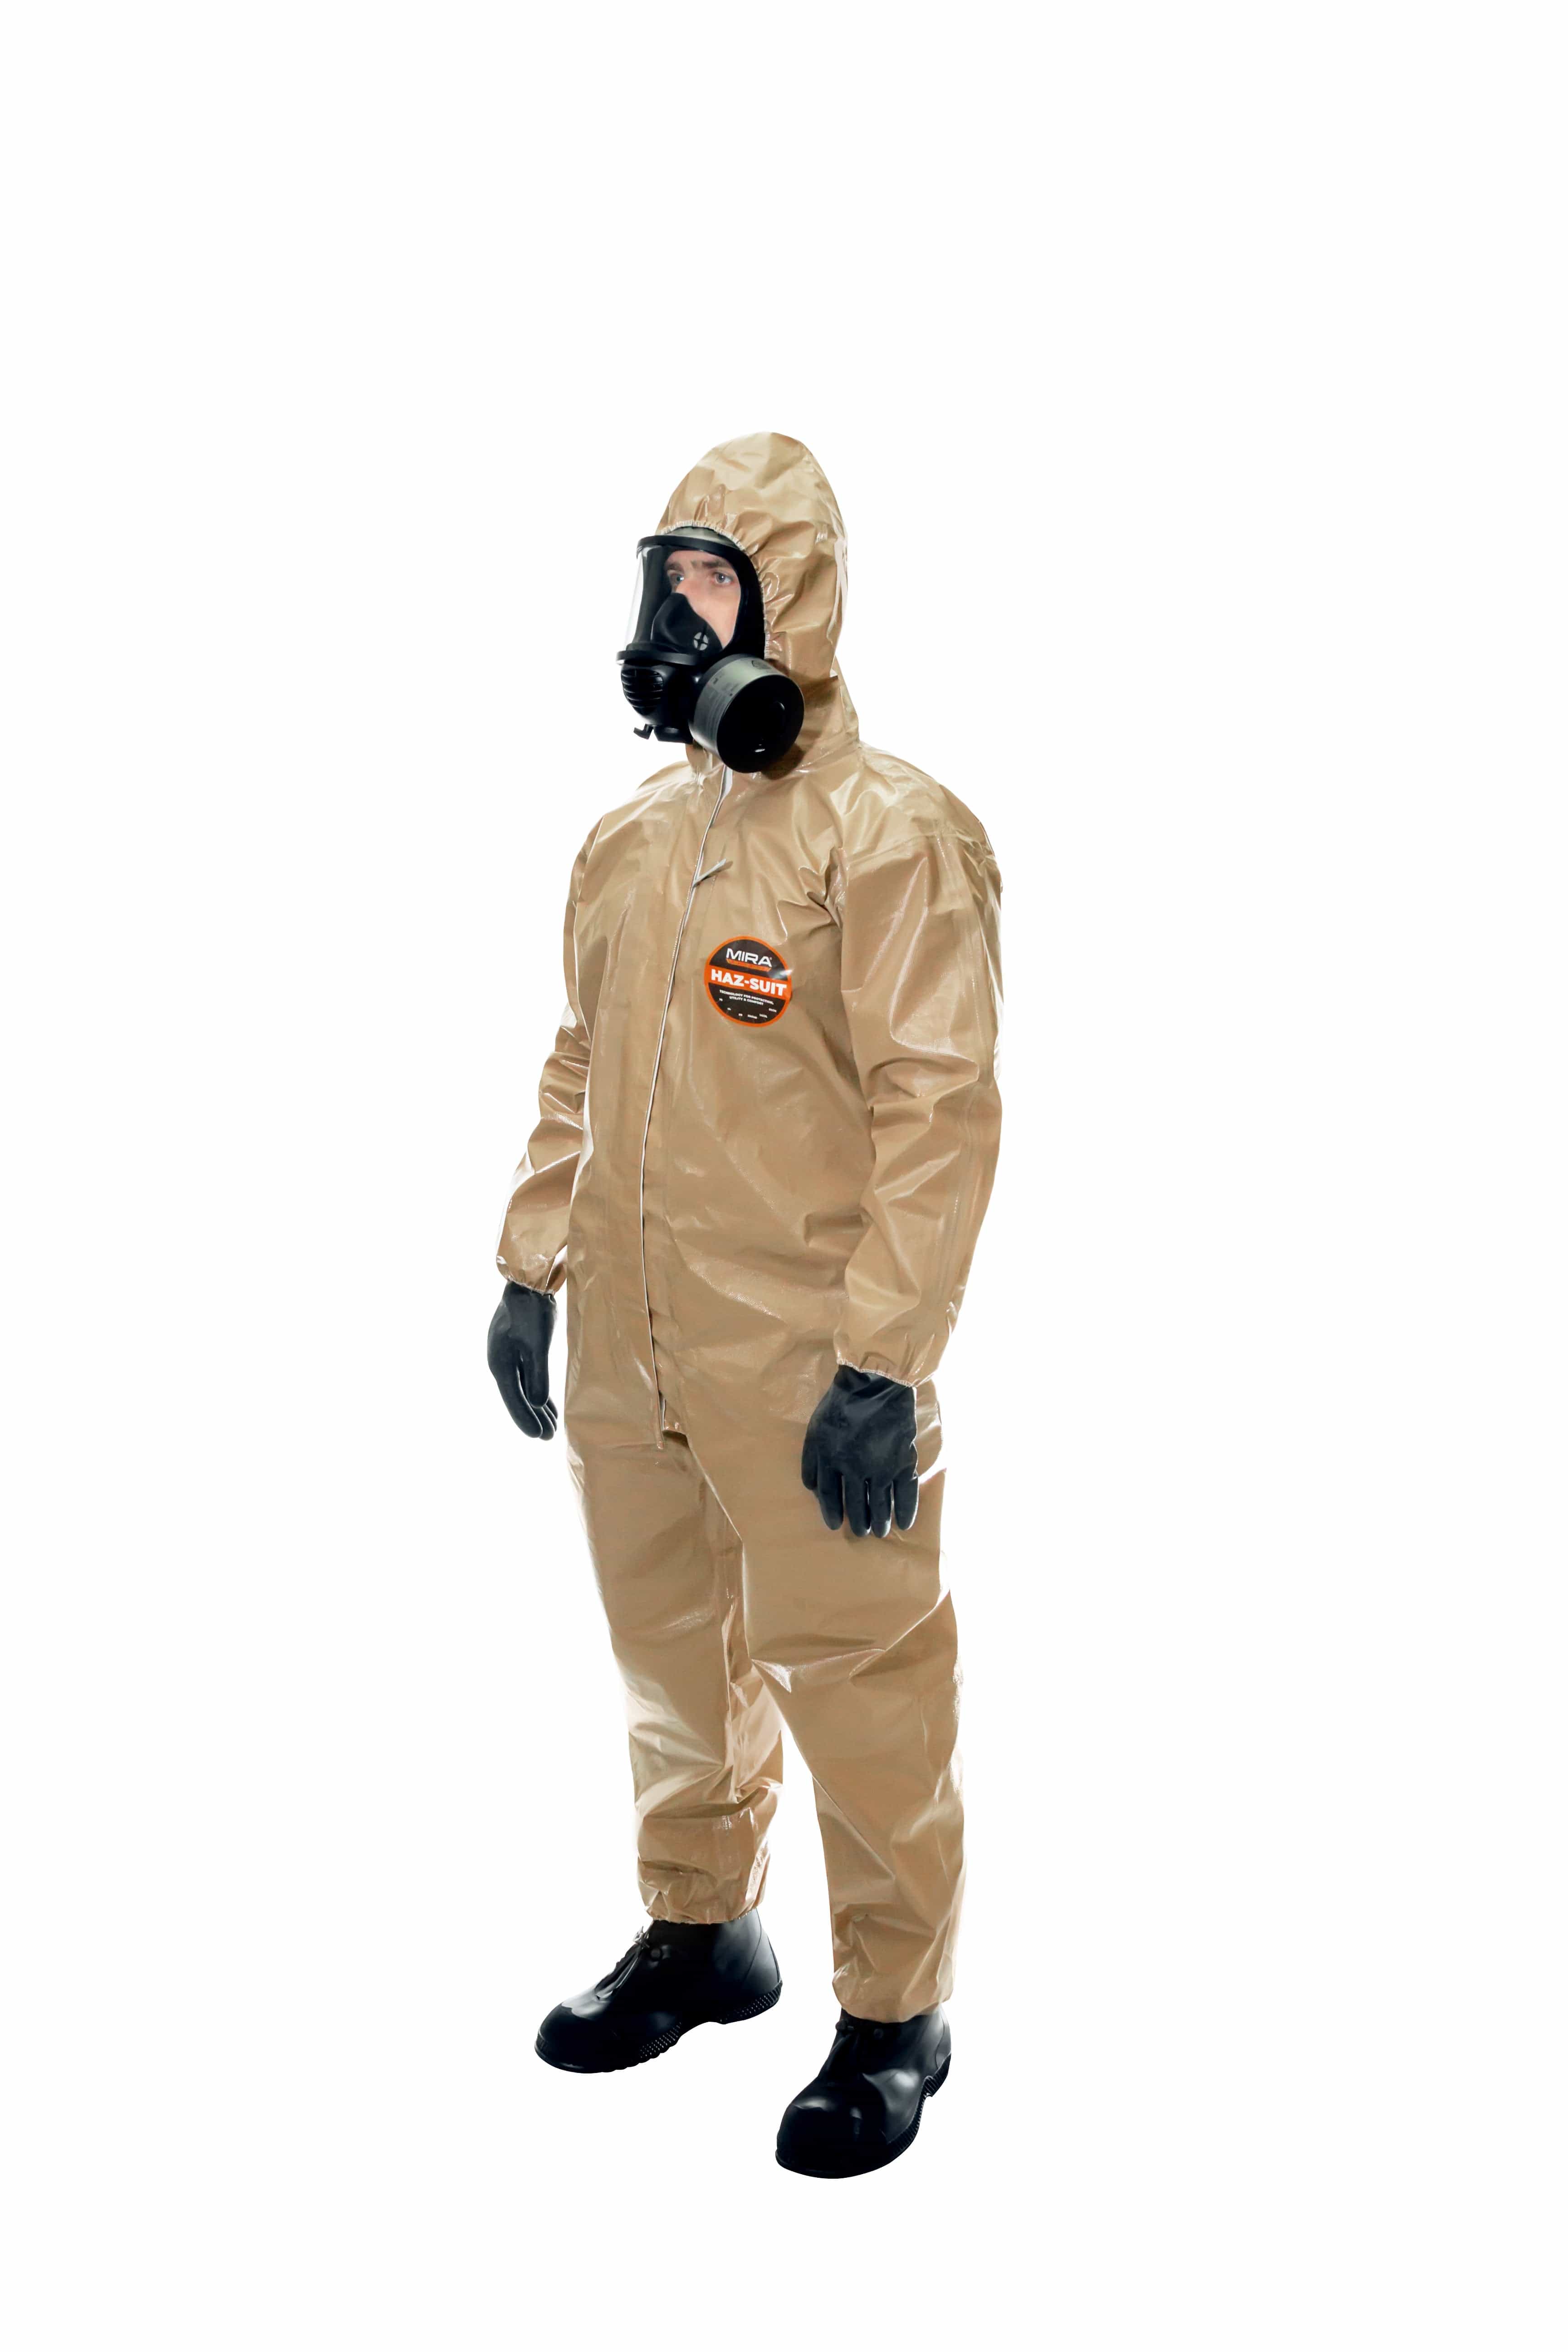 HAZMAT Suit - Chemical Protective CBRN HAZMAT Suit - Children to Adult Size - MIRA Safety